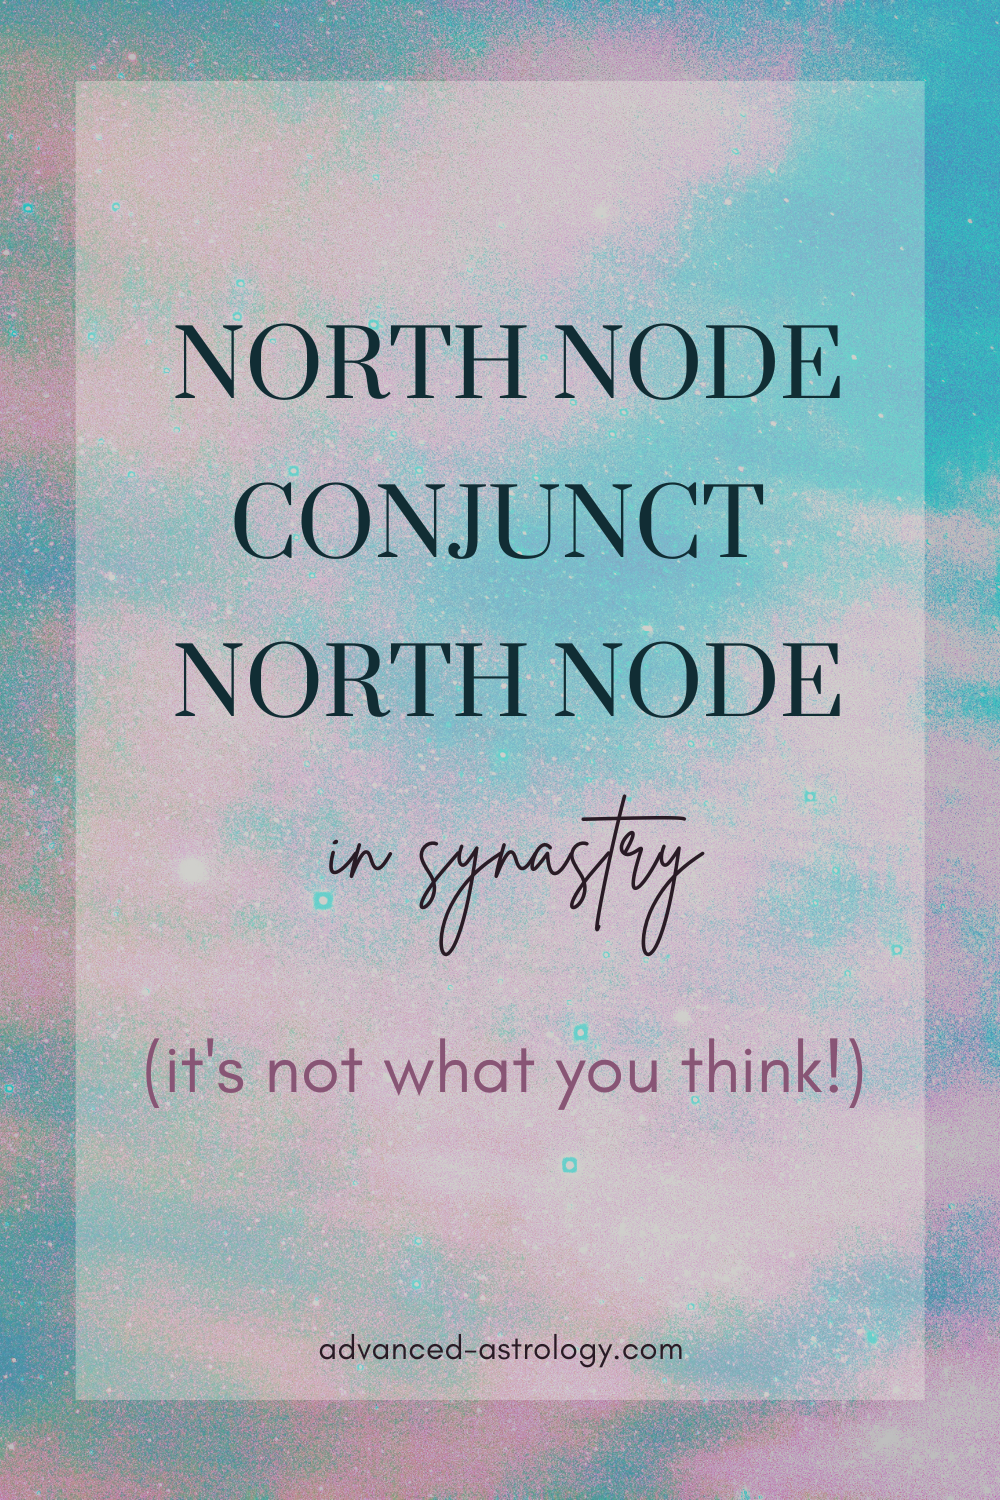 En cantidad Tierra fricción North Node Conjunct North Node Synastry - Astrology